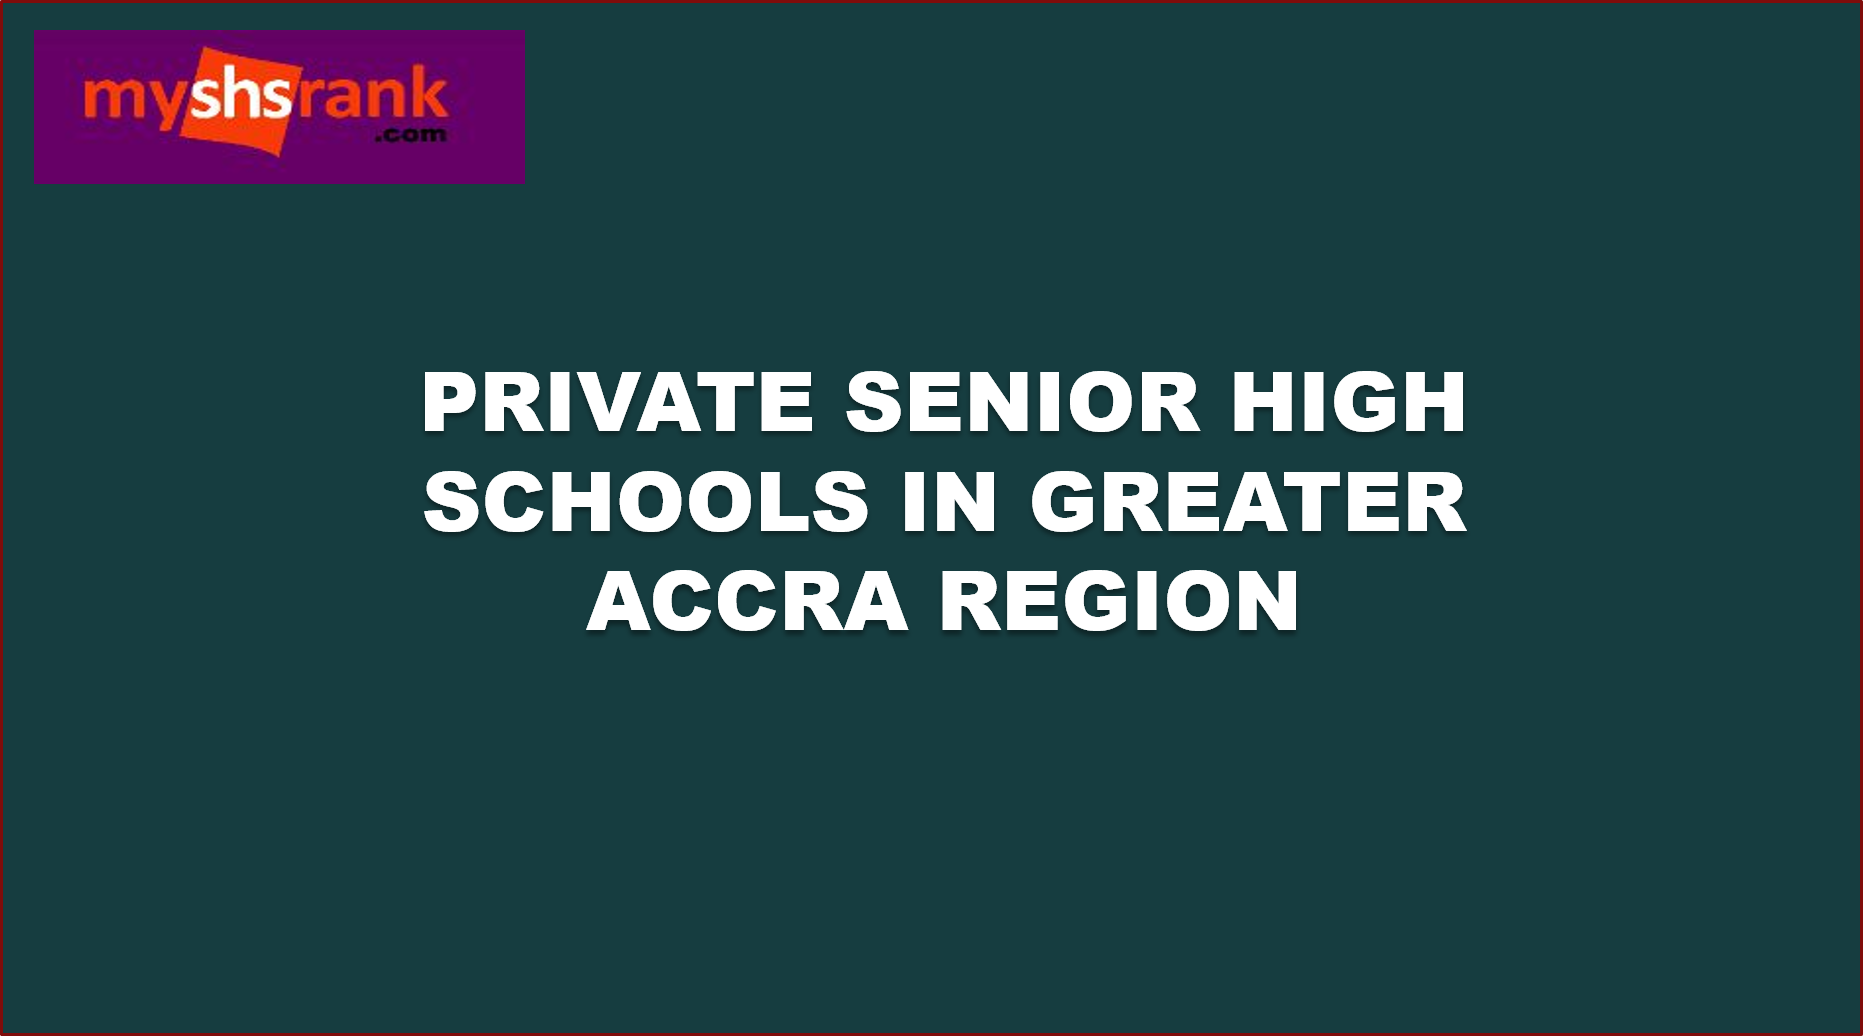 Private senior high schools in accra